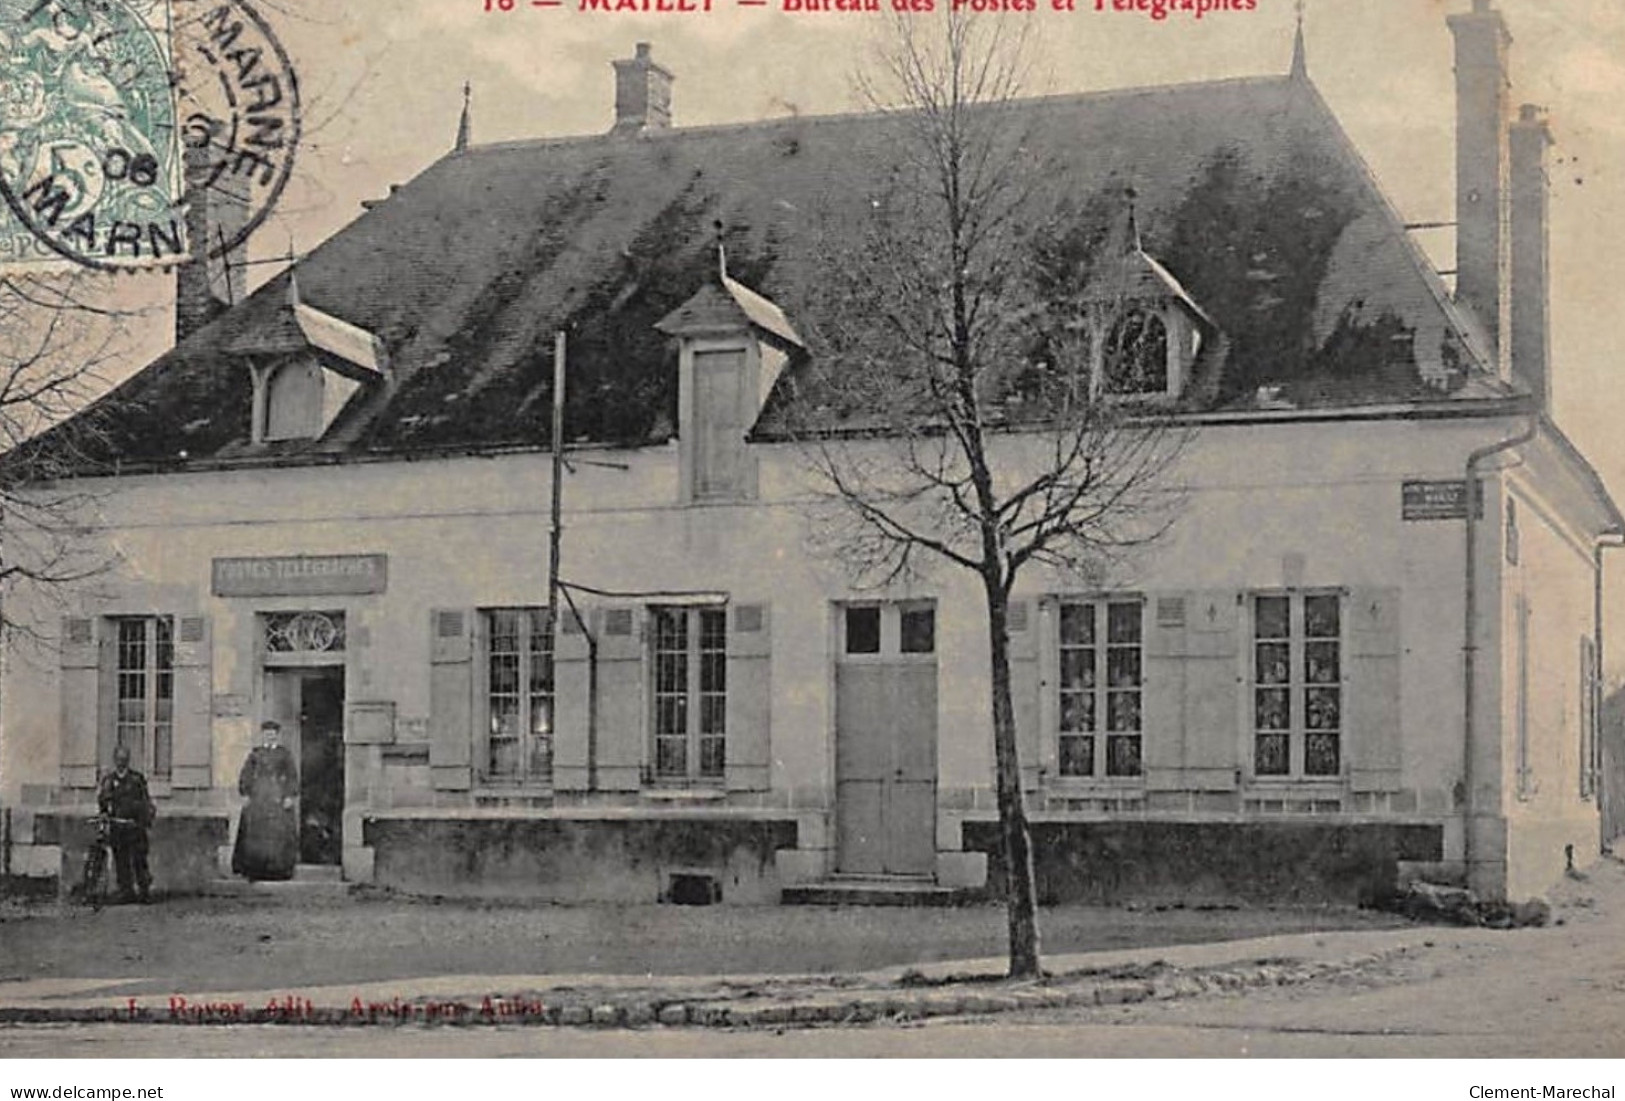 MAILLY : Bureau Des Postes Et Telegraphes - Tres Bon Etat - Mailly-le-Camp